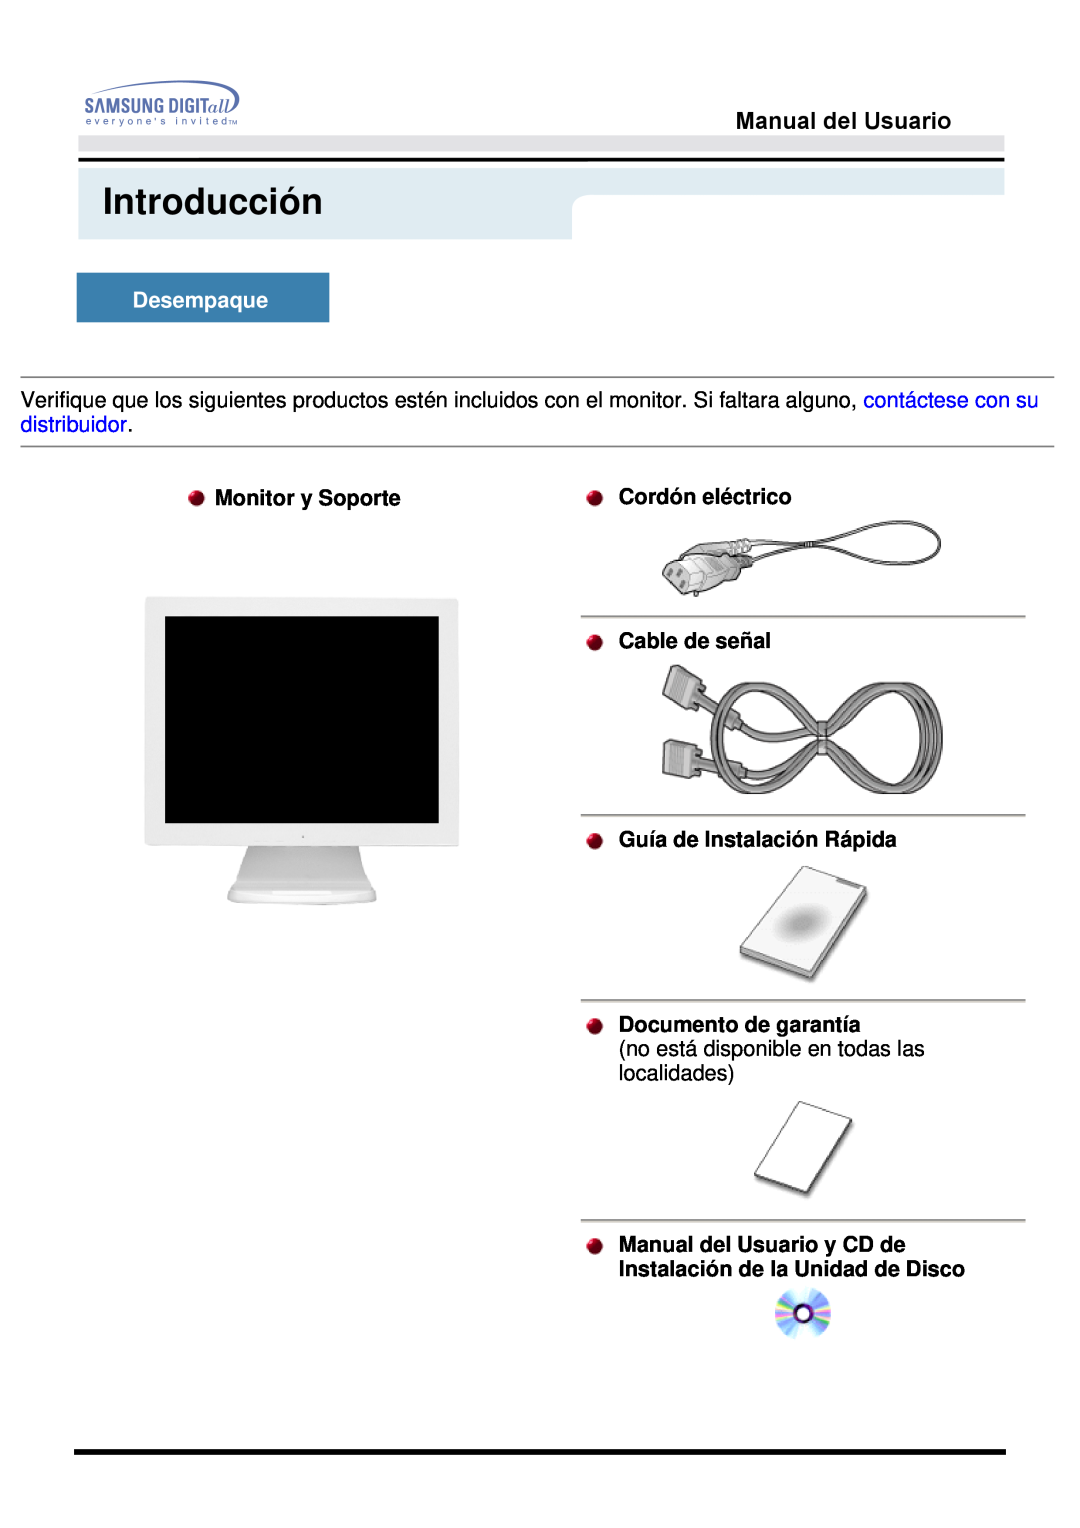 Samsung 153S Introducción, Desempaque, Monitor y Soporte, Cordón eléctrico, Cable de señal Guía de Instalación Rápida 